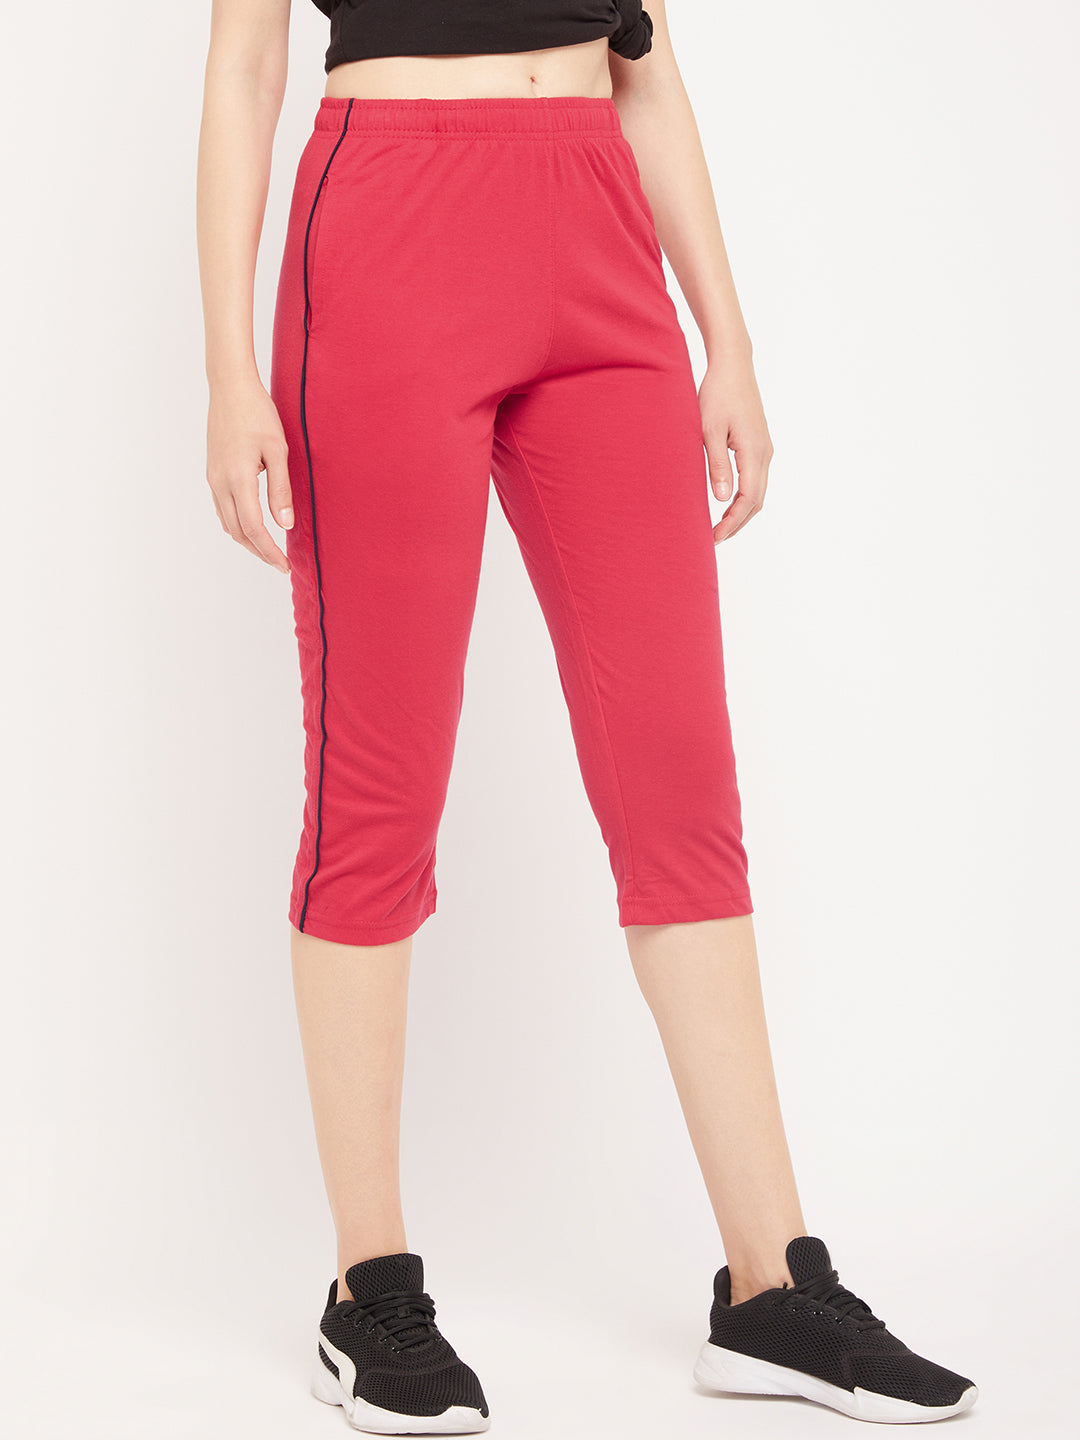 Neva Women's Capri in Solid Pattern Side pockets - Spicy Pink